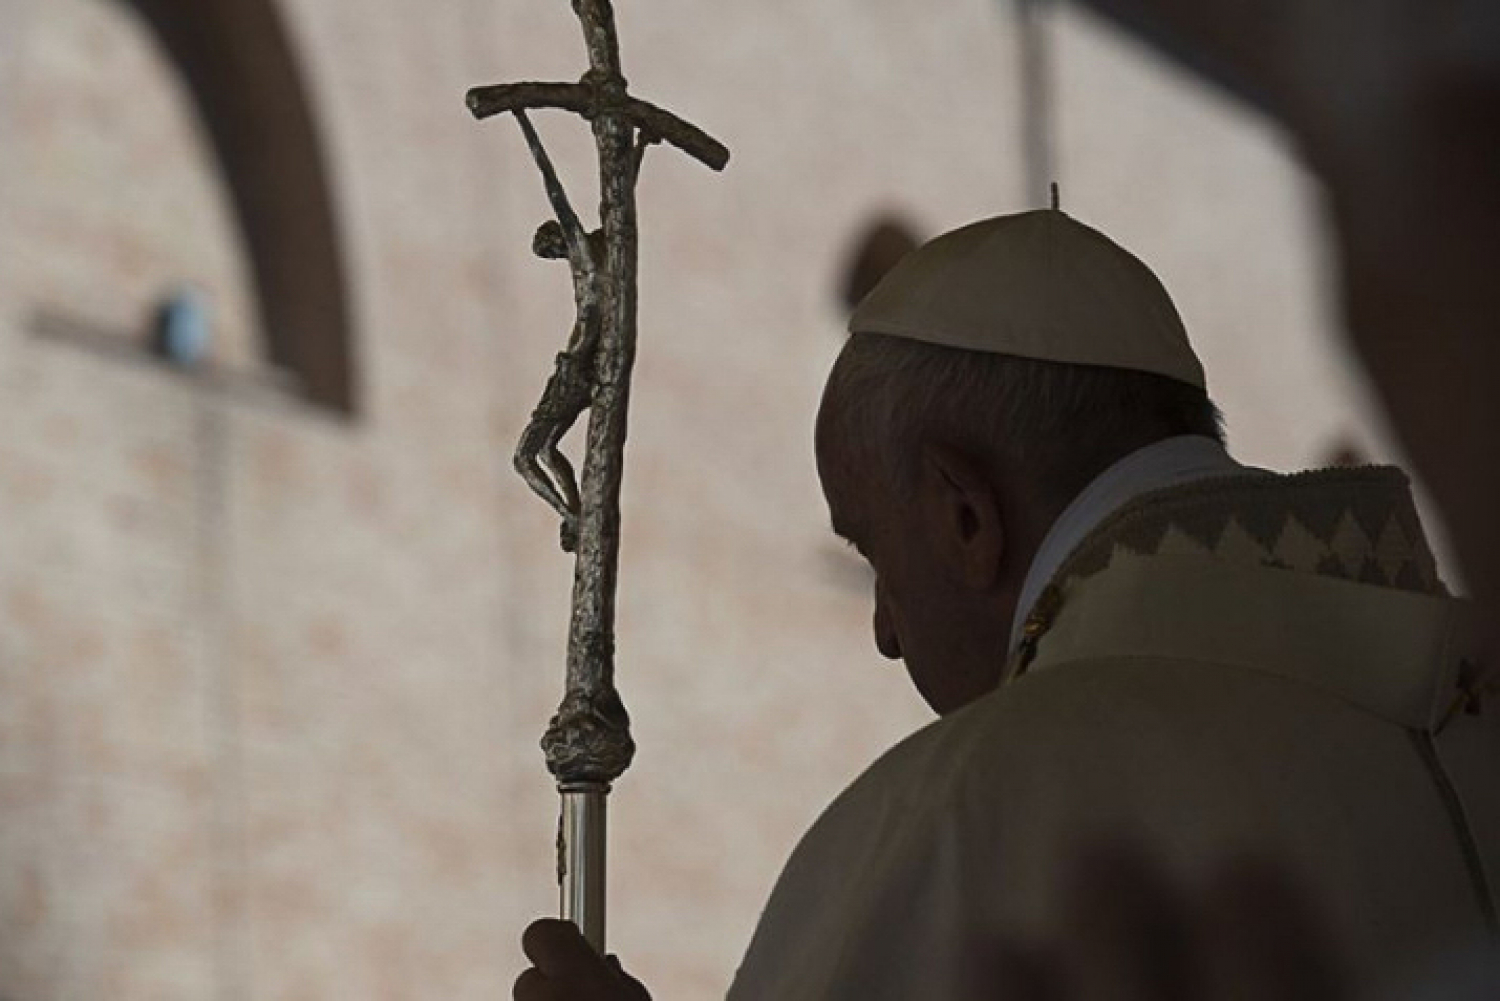 Kapcsolódjatok be az imába! – Ferenc pápa a pénteki imára hív